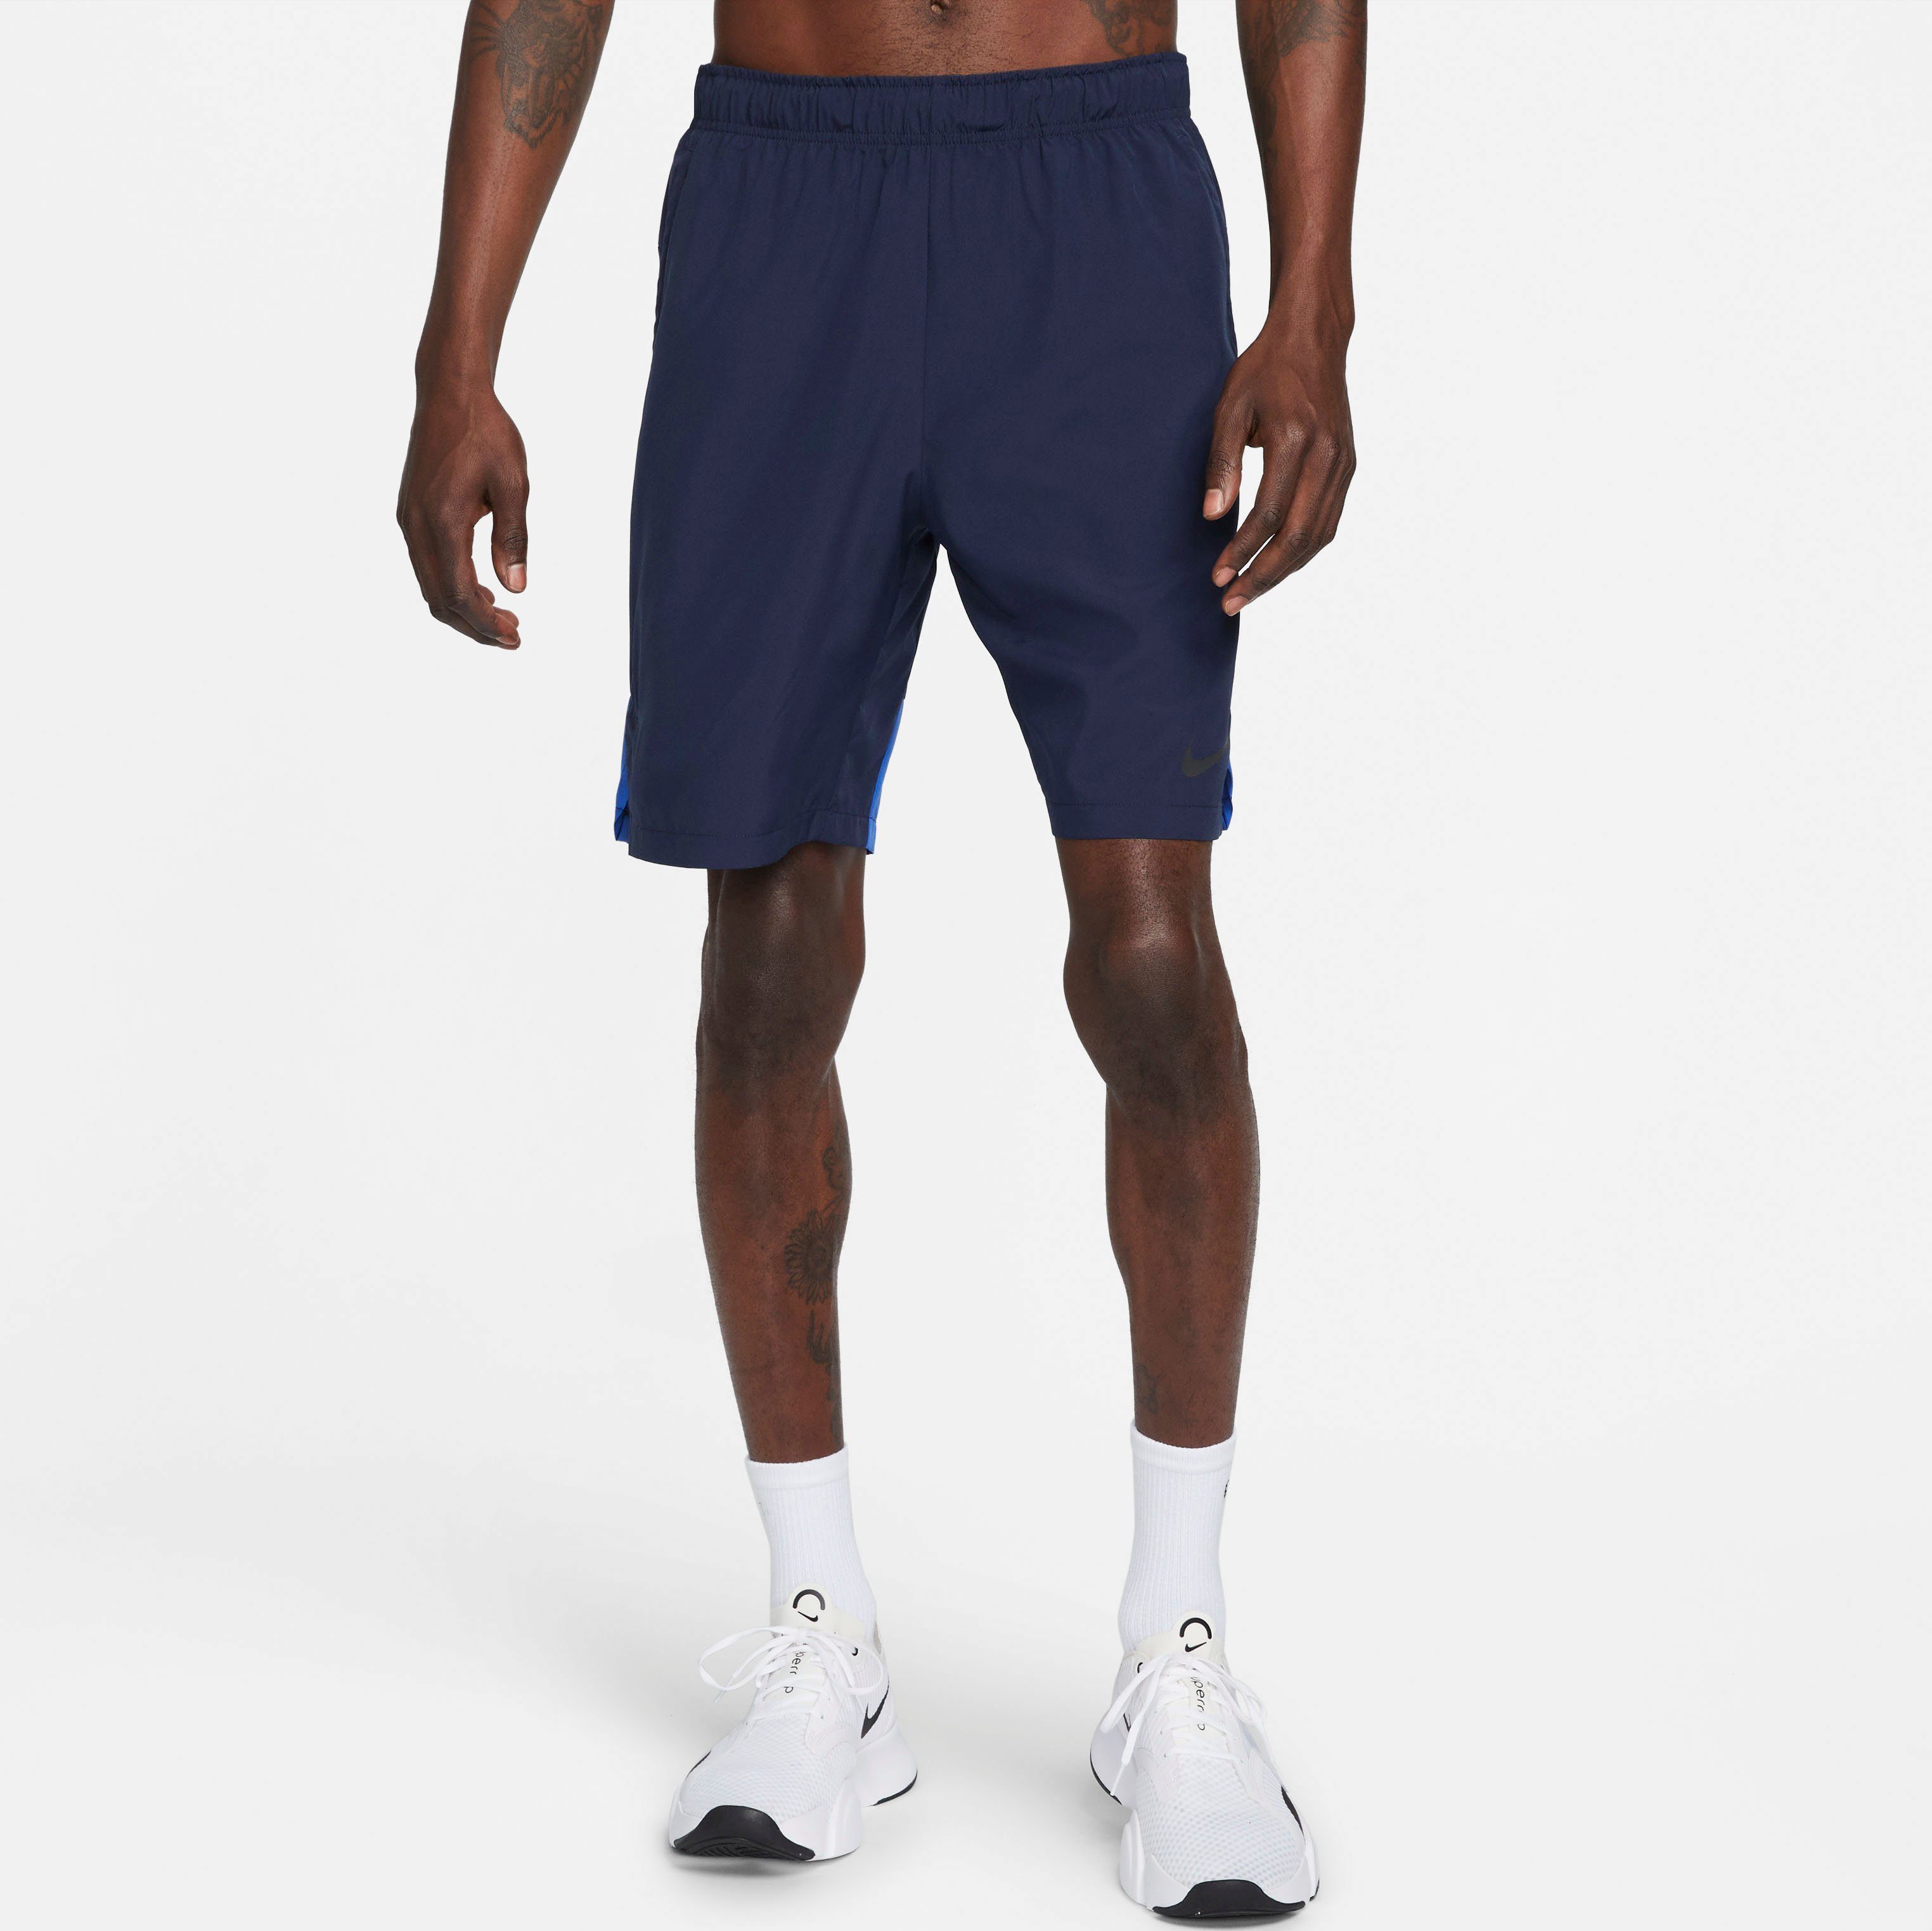 Shorts Men's ROYAL/BLACK Woven Shorts Dri-FIT Nike Training " OBSIDIAN/GAME